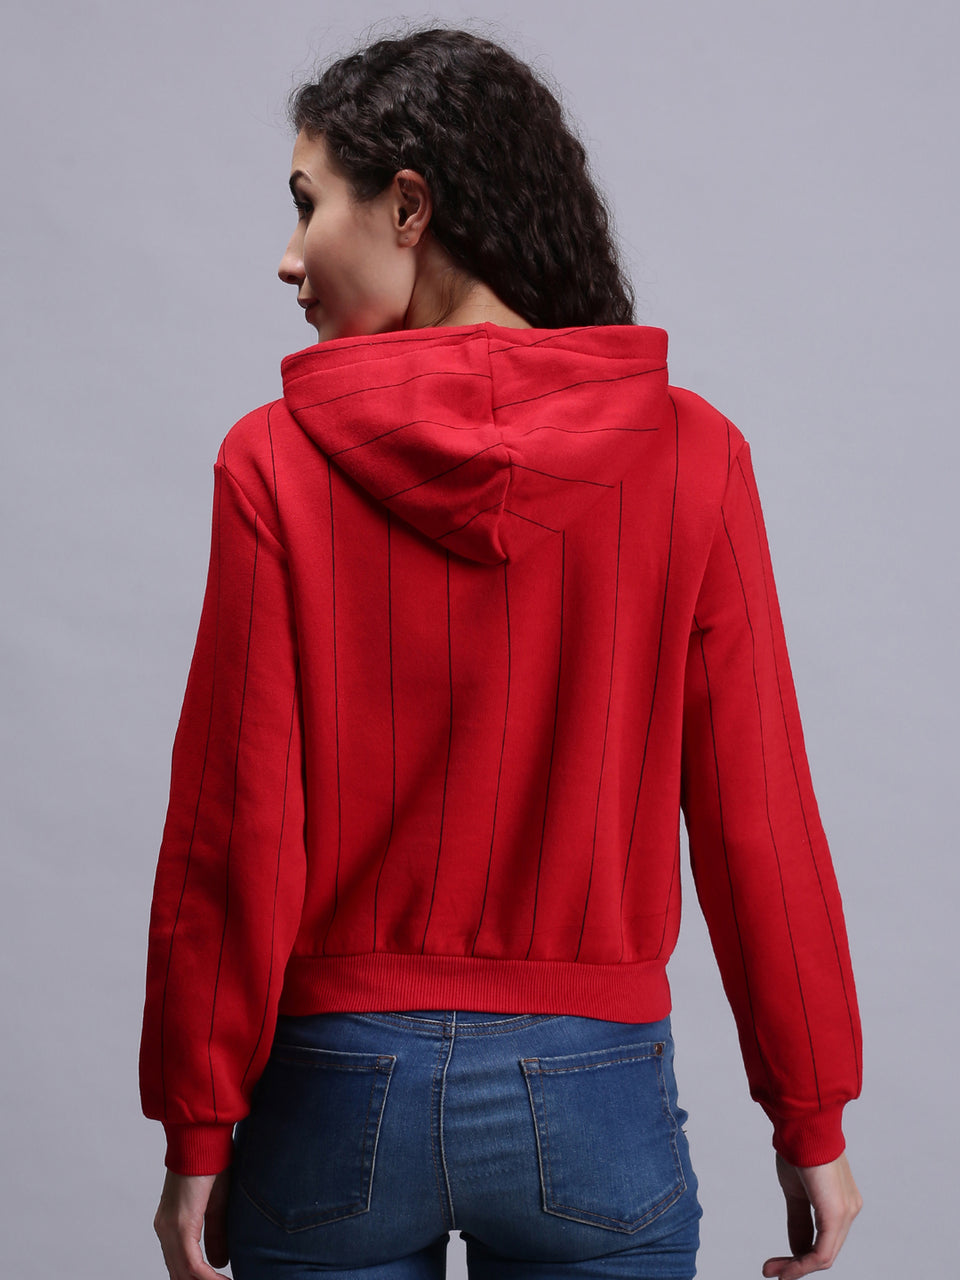 women red printed pullover hoodie sweatshirt